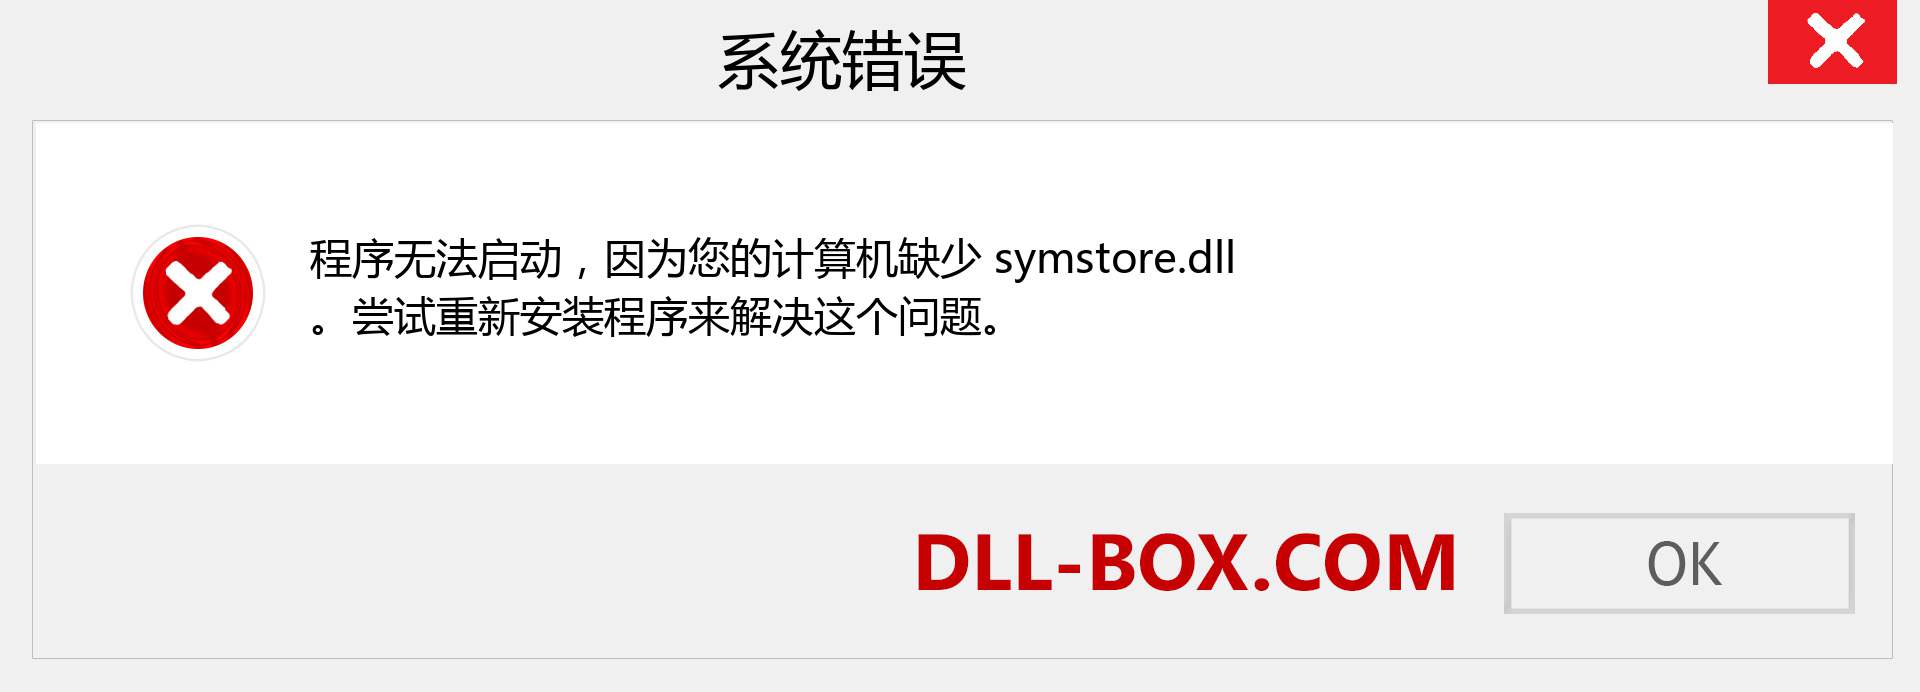 symstore.dll 文件丢失？。 适用于 Windows 7、8、10 的下载 - 修复 Windows、照片、图像上的 symstore dll 丢失错误